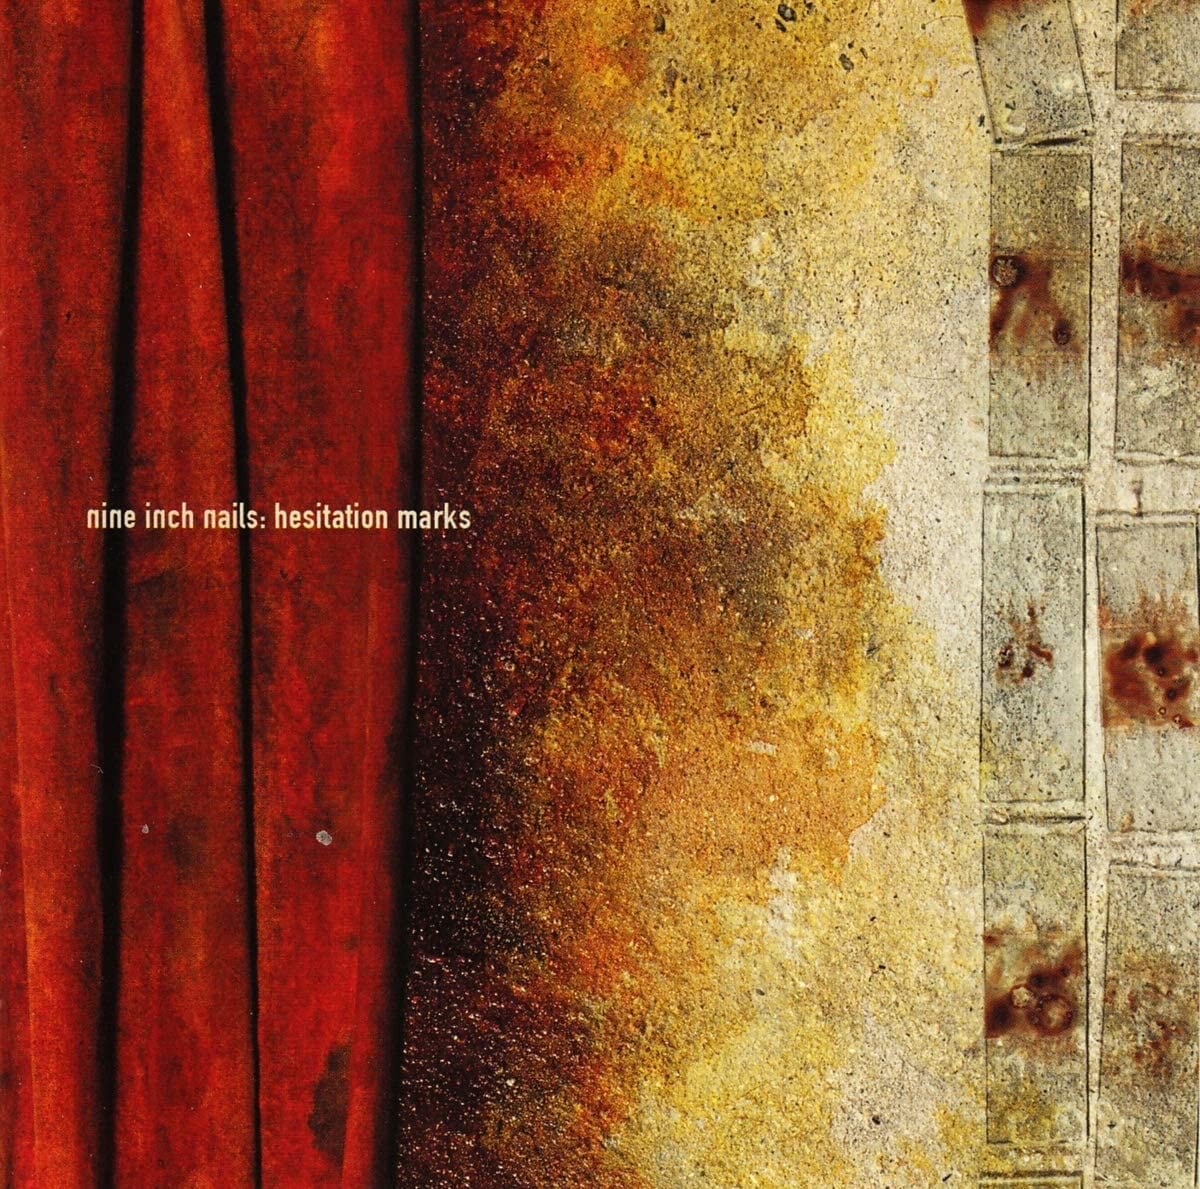 Nine Inch Nails  Hesitation Marks  2xVinyl LP Album Reissue 180 Gram   VinylHeaven  your source for great music